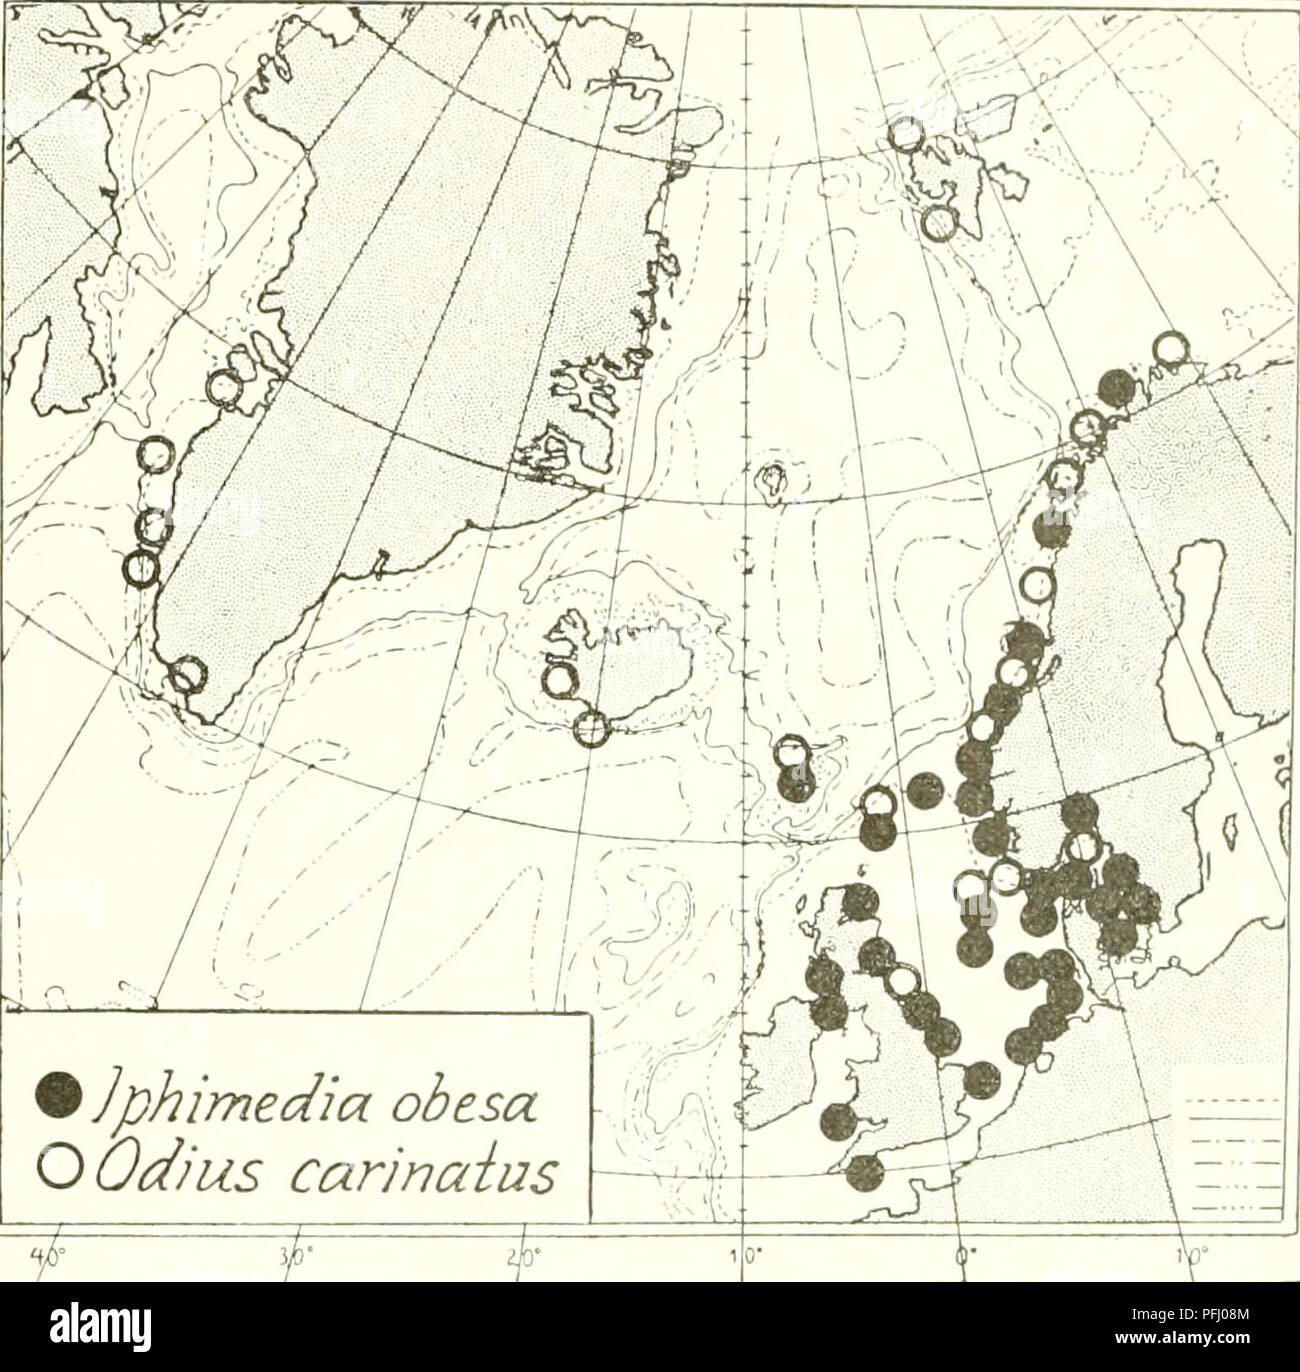 . L'Ingolf danois-expédition. Les animaux marins -- les régions de l'Arctique ; les expéditions scientifiques ; les régions de l'Arctique. Les crustacés Malacostracés. VII. 209 - dans les eaux danoises très fréquent de l'Storebelt et le son (Hven), les profondeurs plus couramment 15 à 40 m. (K. Stephensen, Vid. Medd. vol.82, 1926, p. 74). - 6i°j4' N., 119' E., 160 m. ("Thor" 21-7-1905, 120, rue ; les spécimens dans le Copenhagen Zool. Musée). - Amérique du .Sea, plusieurs lo&Lt ; réalités r," 02' X 3, r.6•'' ].., 73 m., la ligne du sable ; 57 "54' N., 44.S' E., 100 m., du sable fin avec de l'argile (Reibisch 1907, p. 189) : 54' 05' 128, X.•' !...  %]P Banque D'Images